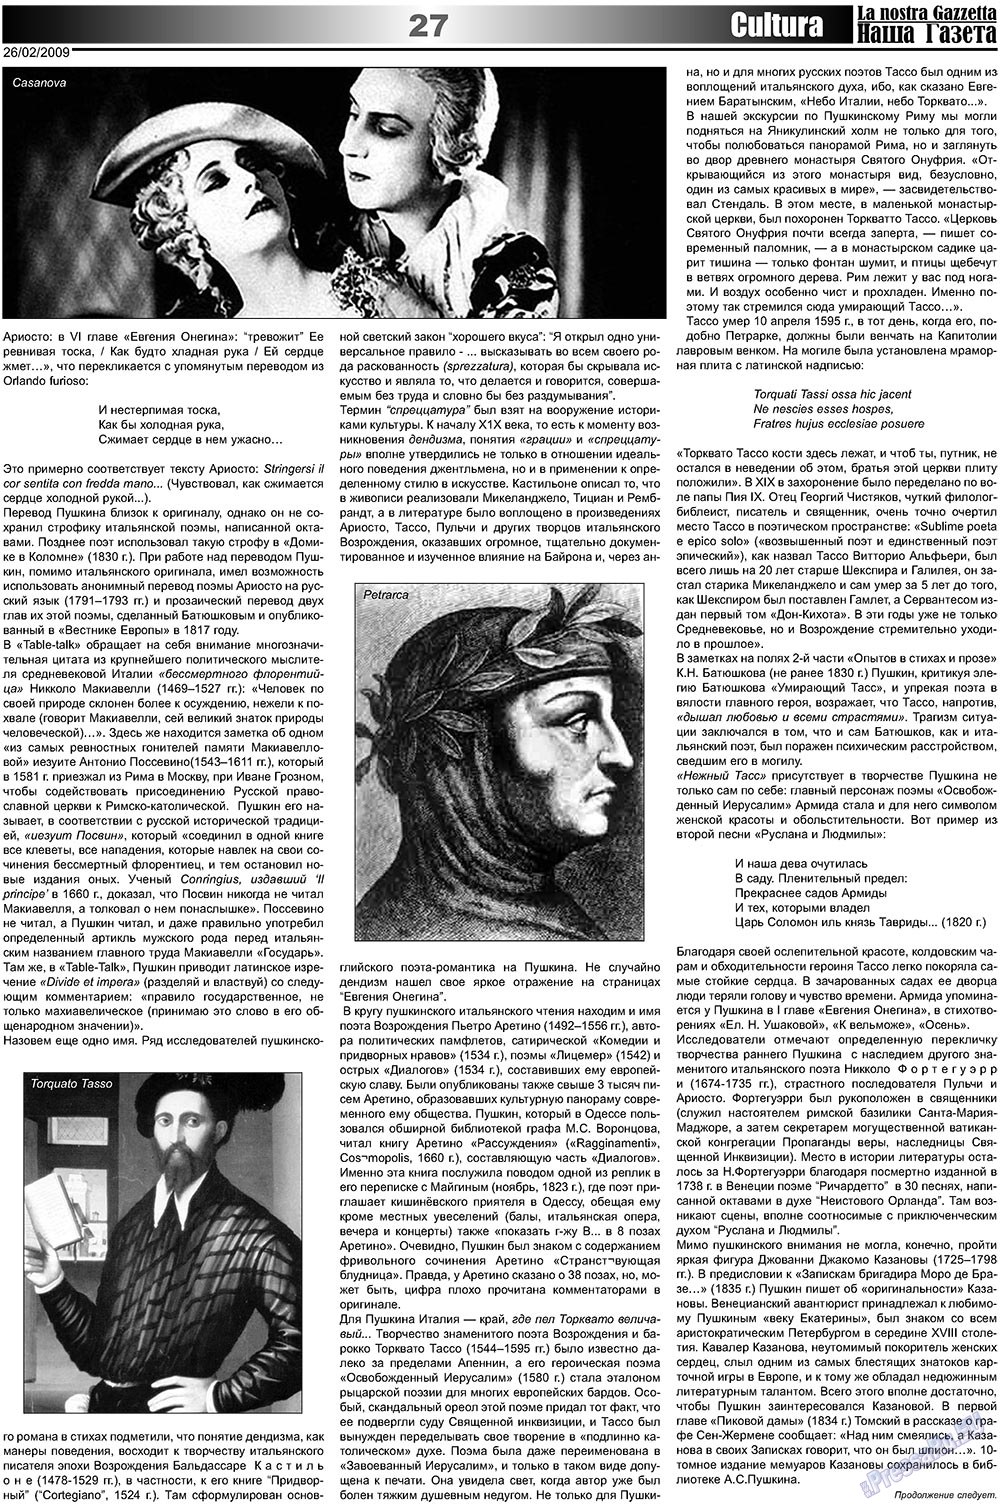 Наша Газета Италия, газета. 2009 №4 стр.27